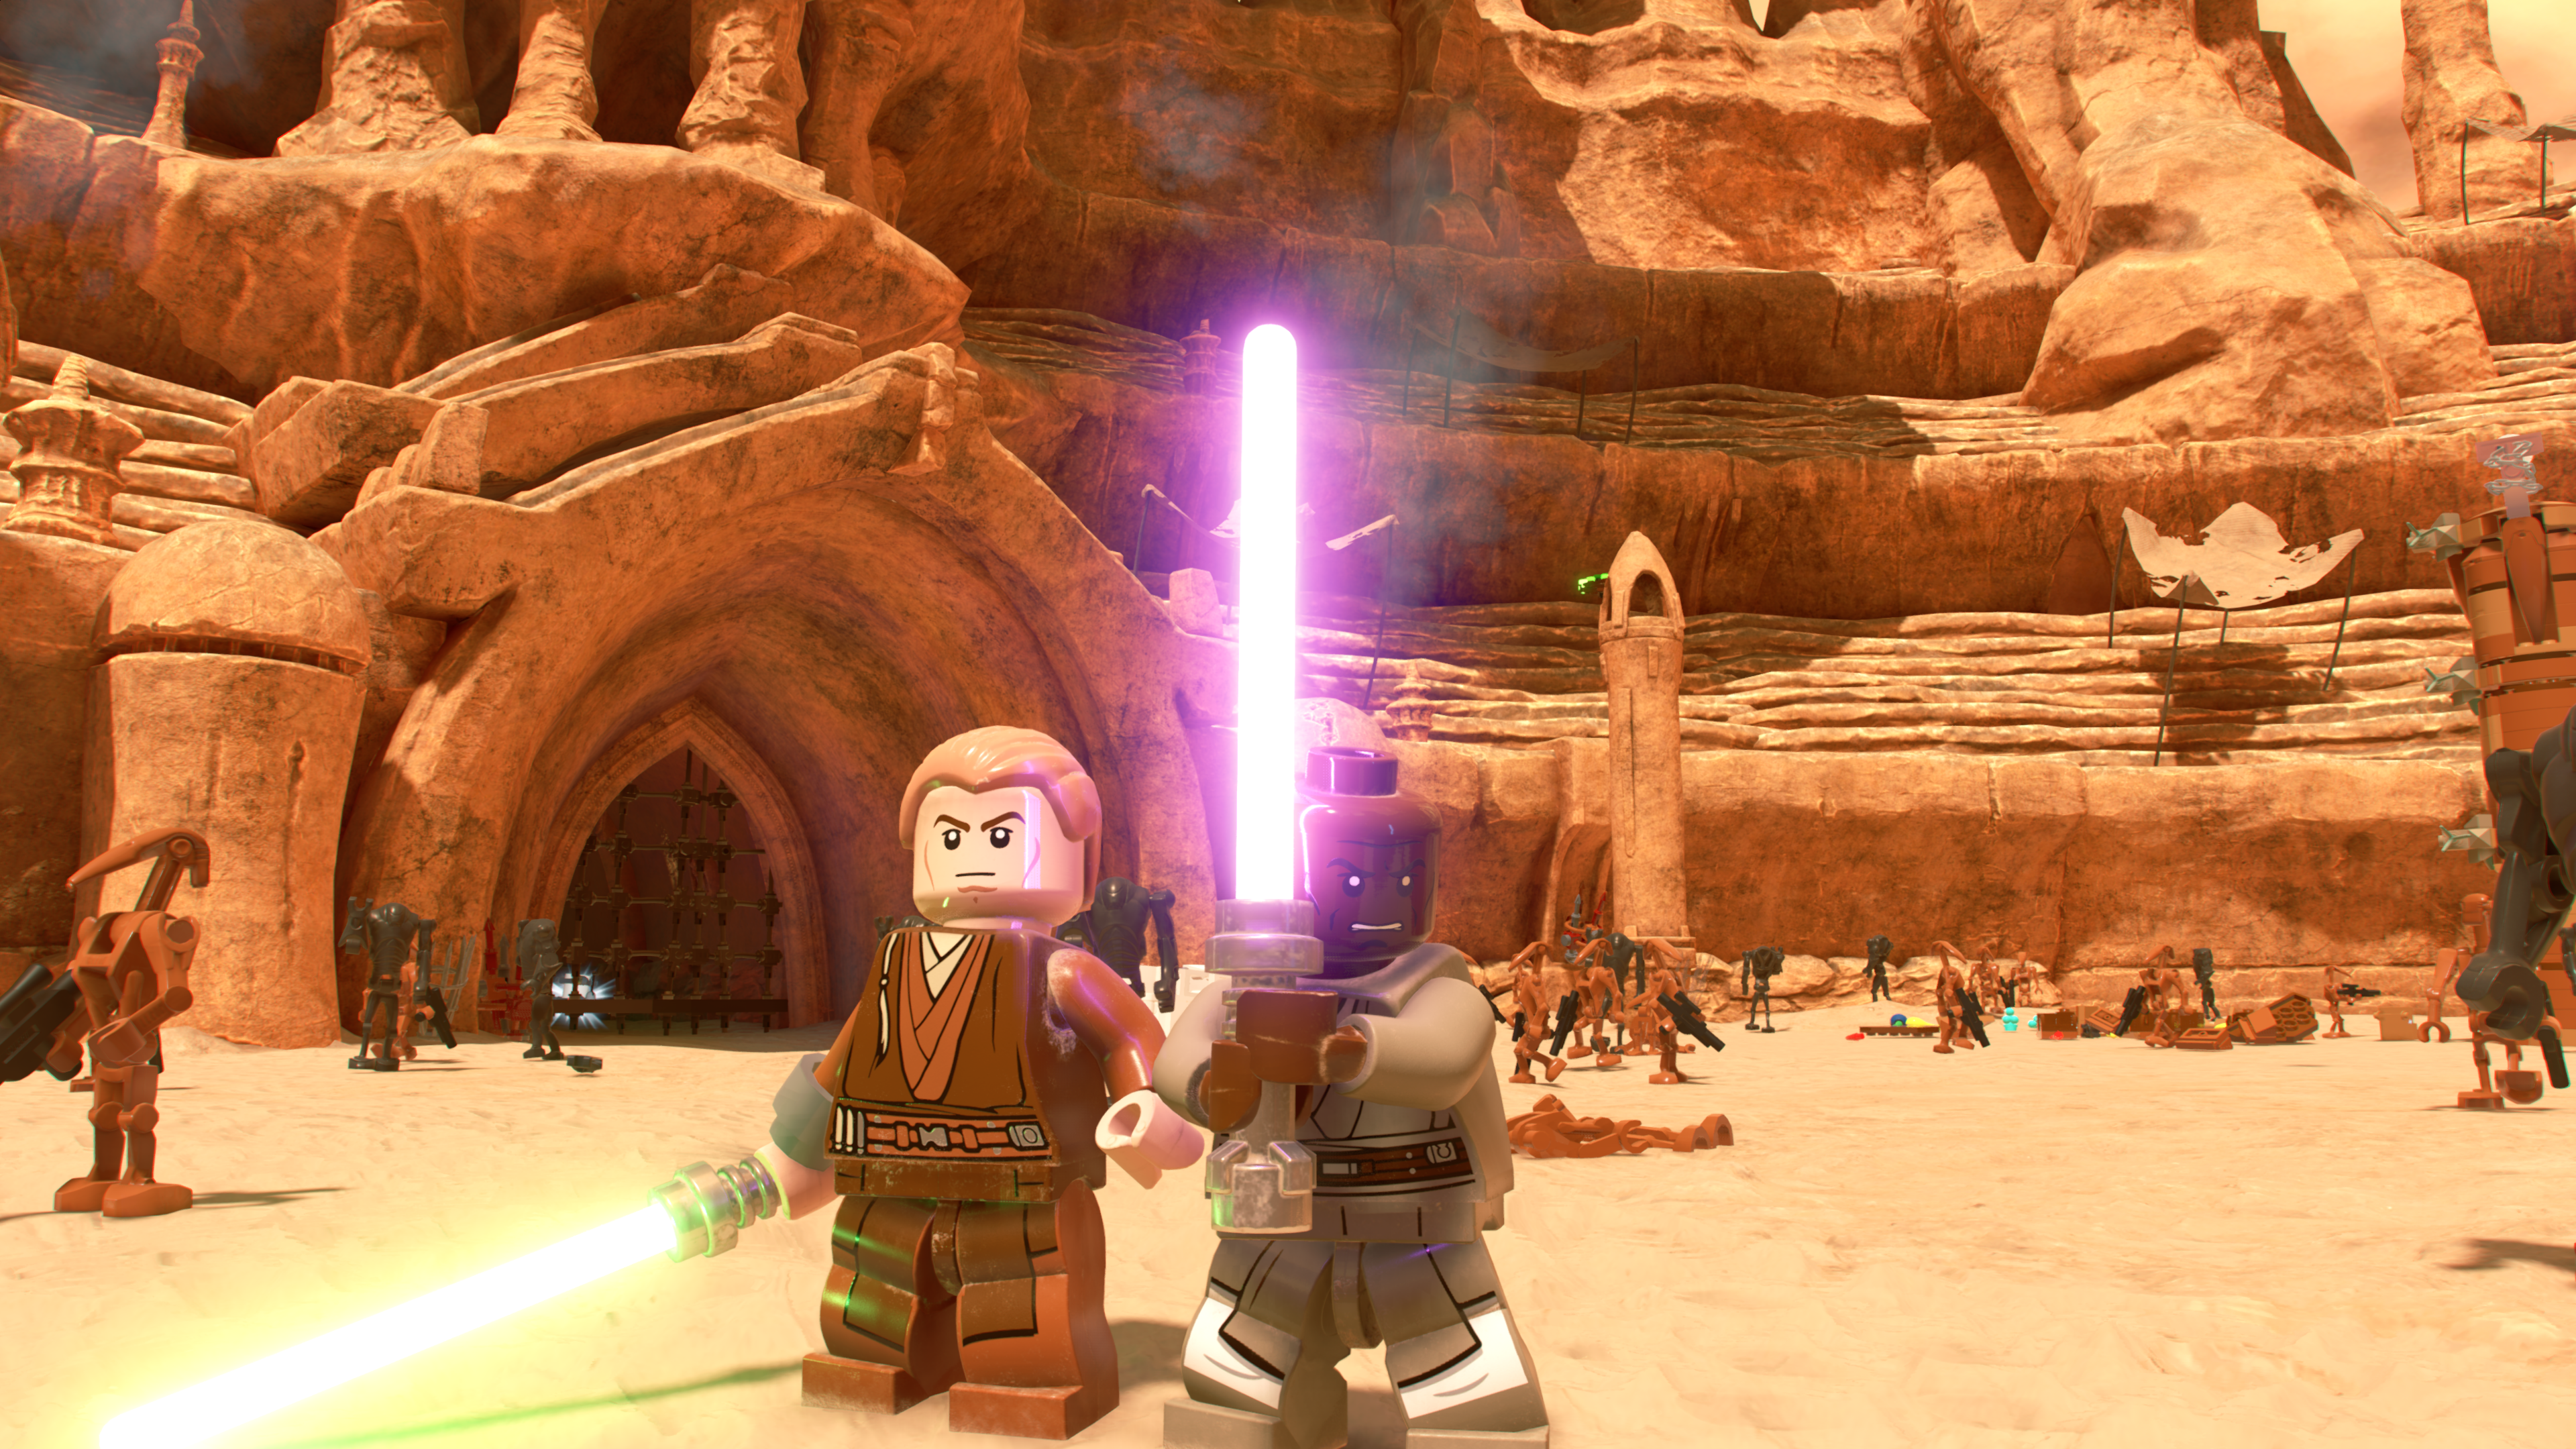 LEGO STAR WARS The Skywalker Saga já foi lançado